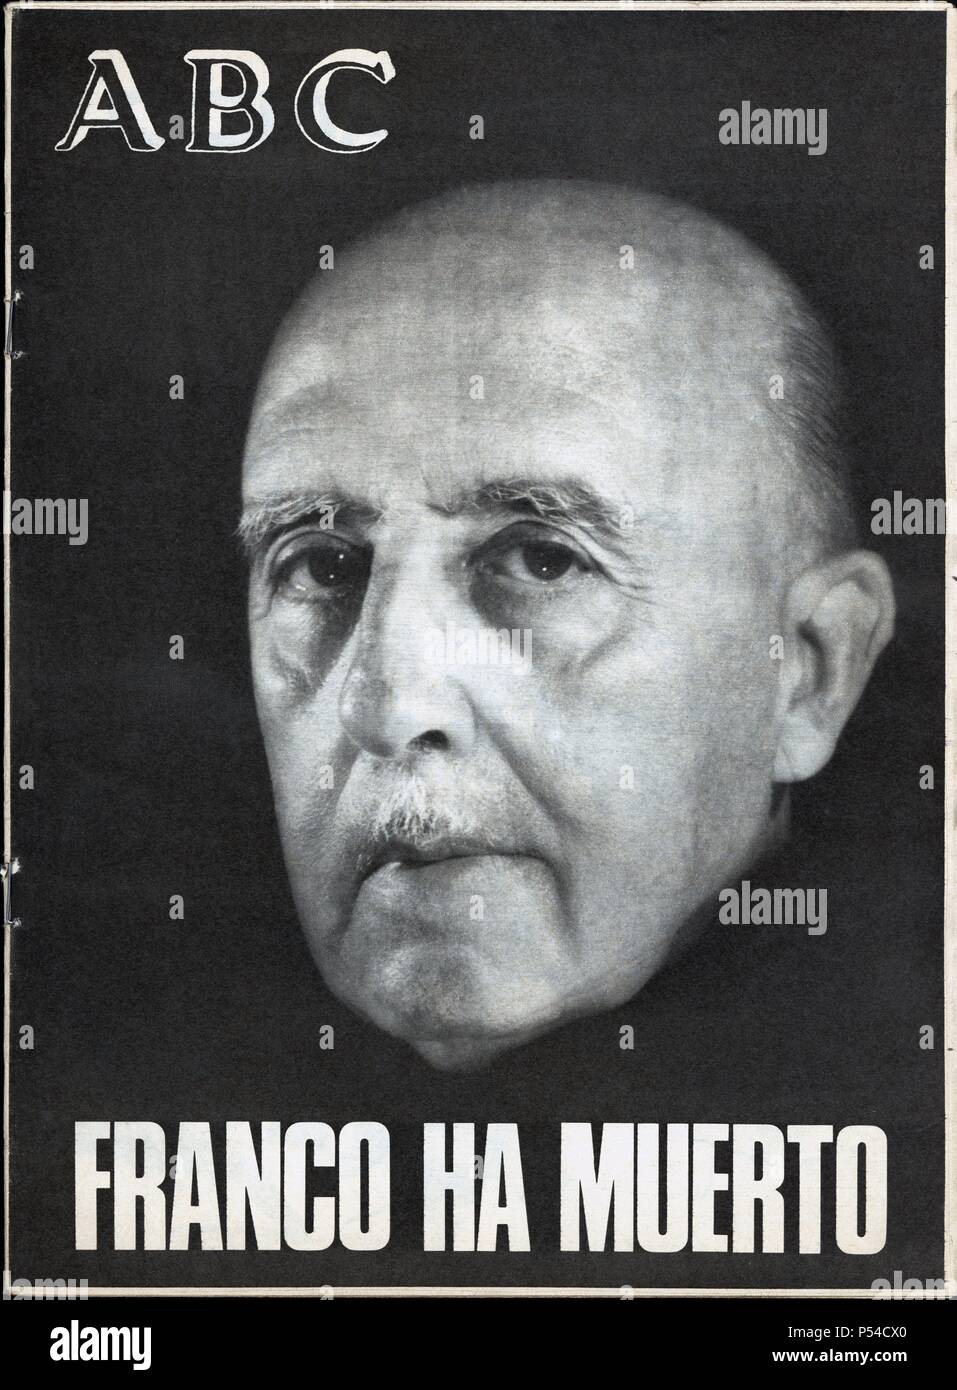 Portada del periódico ABC de Madrid con la noticia de la muerte de Francisco Franco Bahamonde. 21 noviembre de 1975. Stock Photo